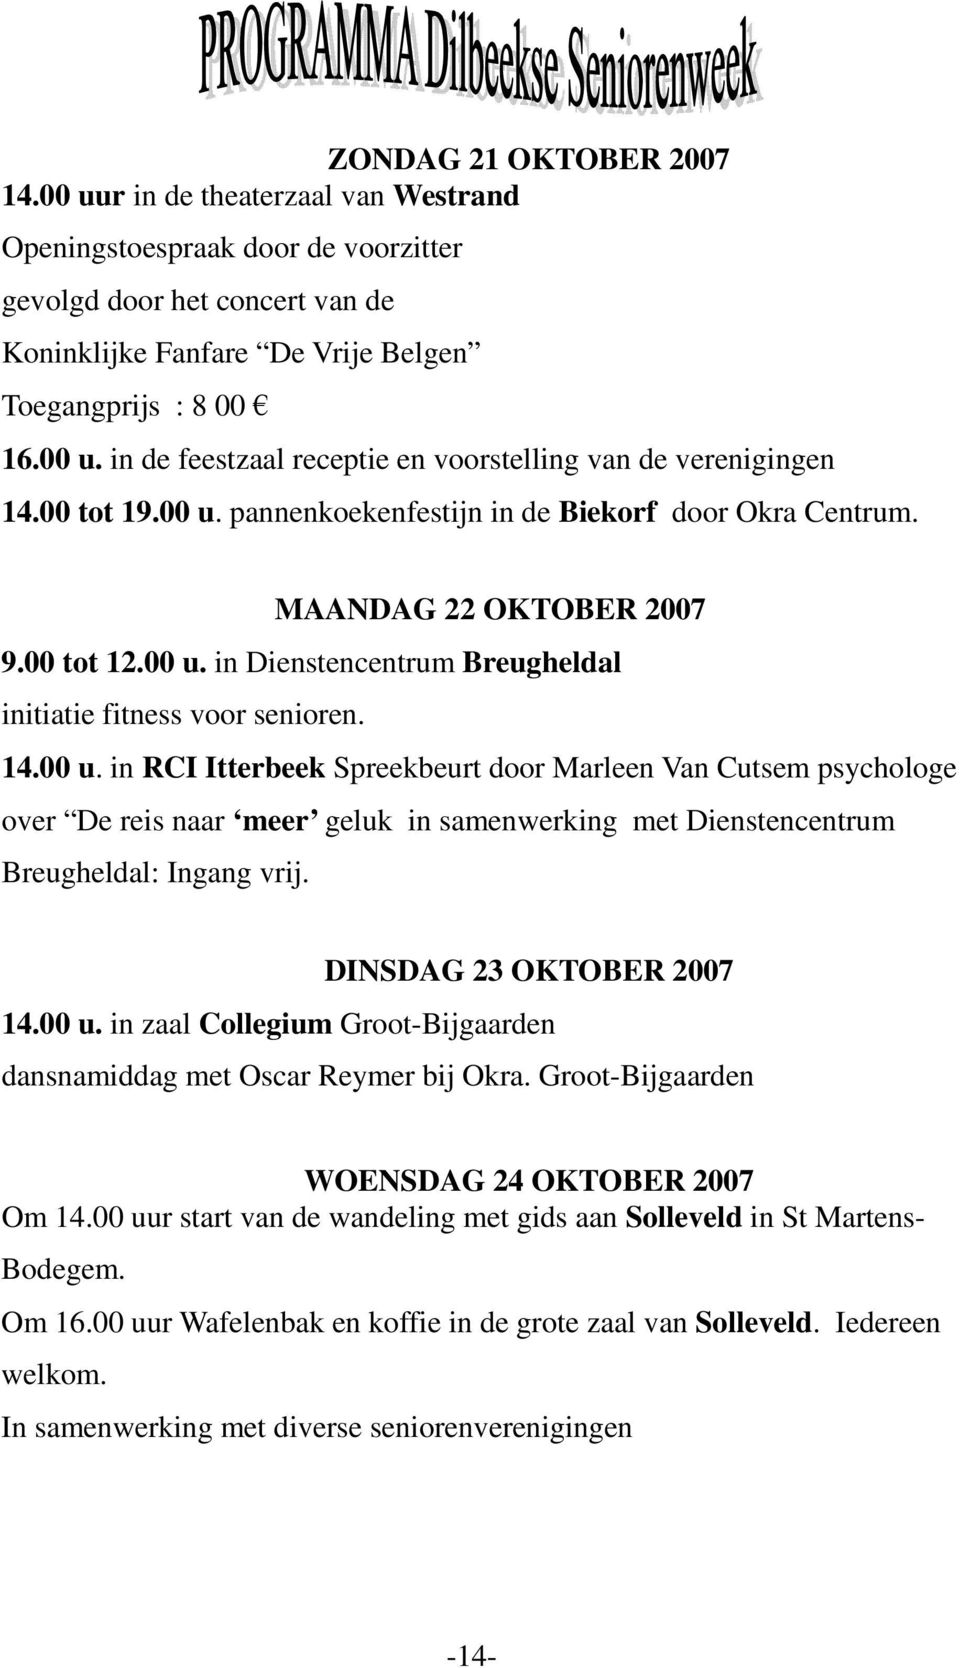 DINSDAG 23 OKTOBER 2007 14.00 u. in zaal Collegium Groot-Bijgaarden dansnamiddag met Oscar Reymer bij Okra. Groot-Bijgaarden WOENSDAG 24 OKTOBER 2007 Om 14.